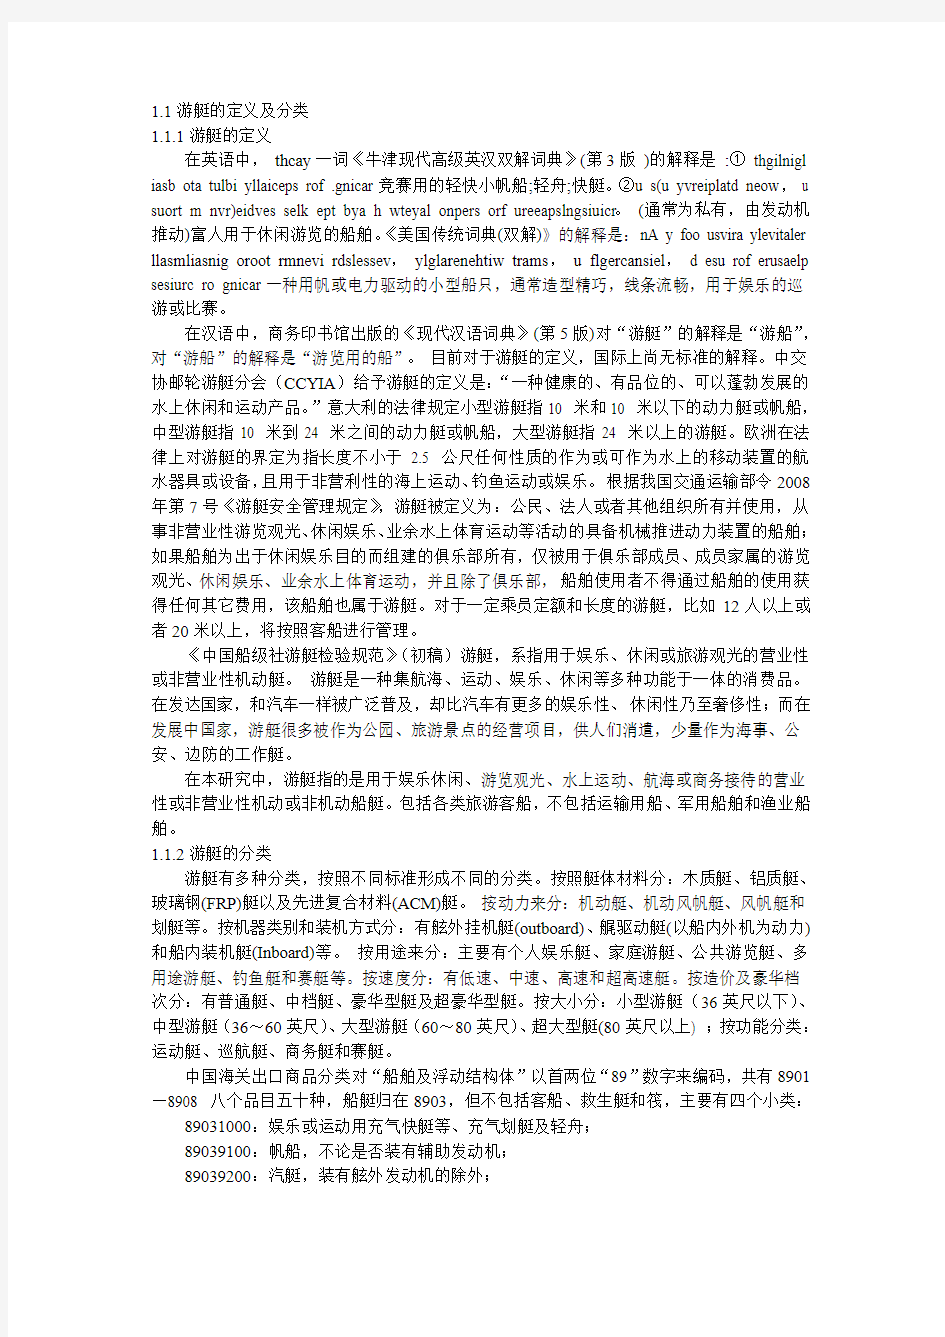 2009-2010中国游艇产业报告(一)：游艇的定义及分类